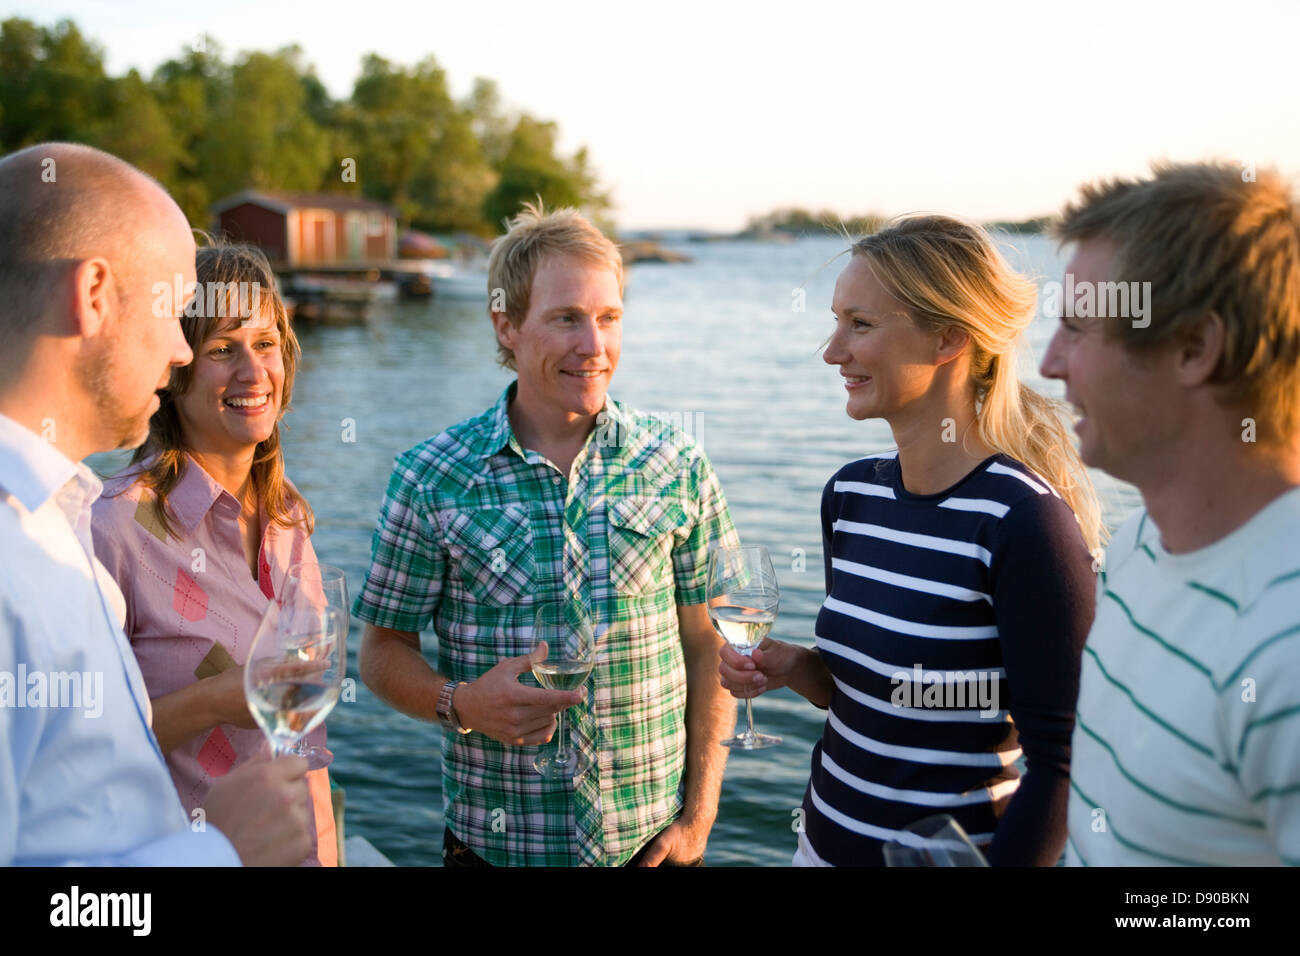 Cinco amigos hablando y bebiendo, Fejan, archipiélago de Estocolmo, Suecia. Foto de stock